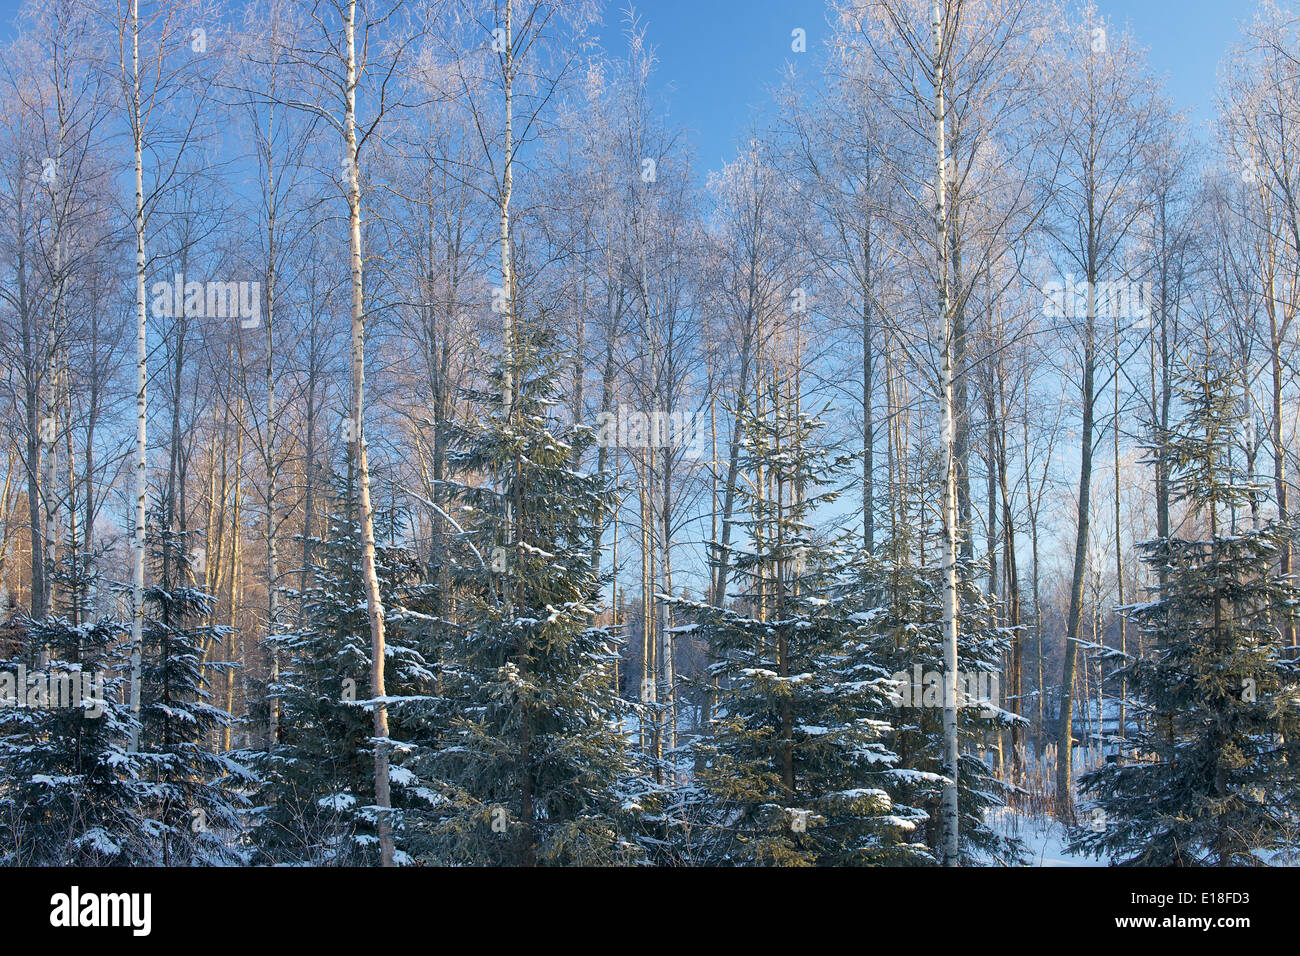 Foresta Naturale vista in Finlandia in inverno con betulle e abeti giovani alberi. Foto Stock